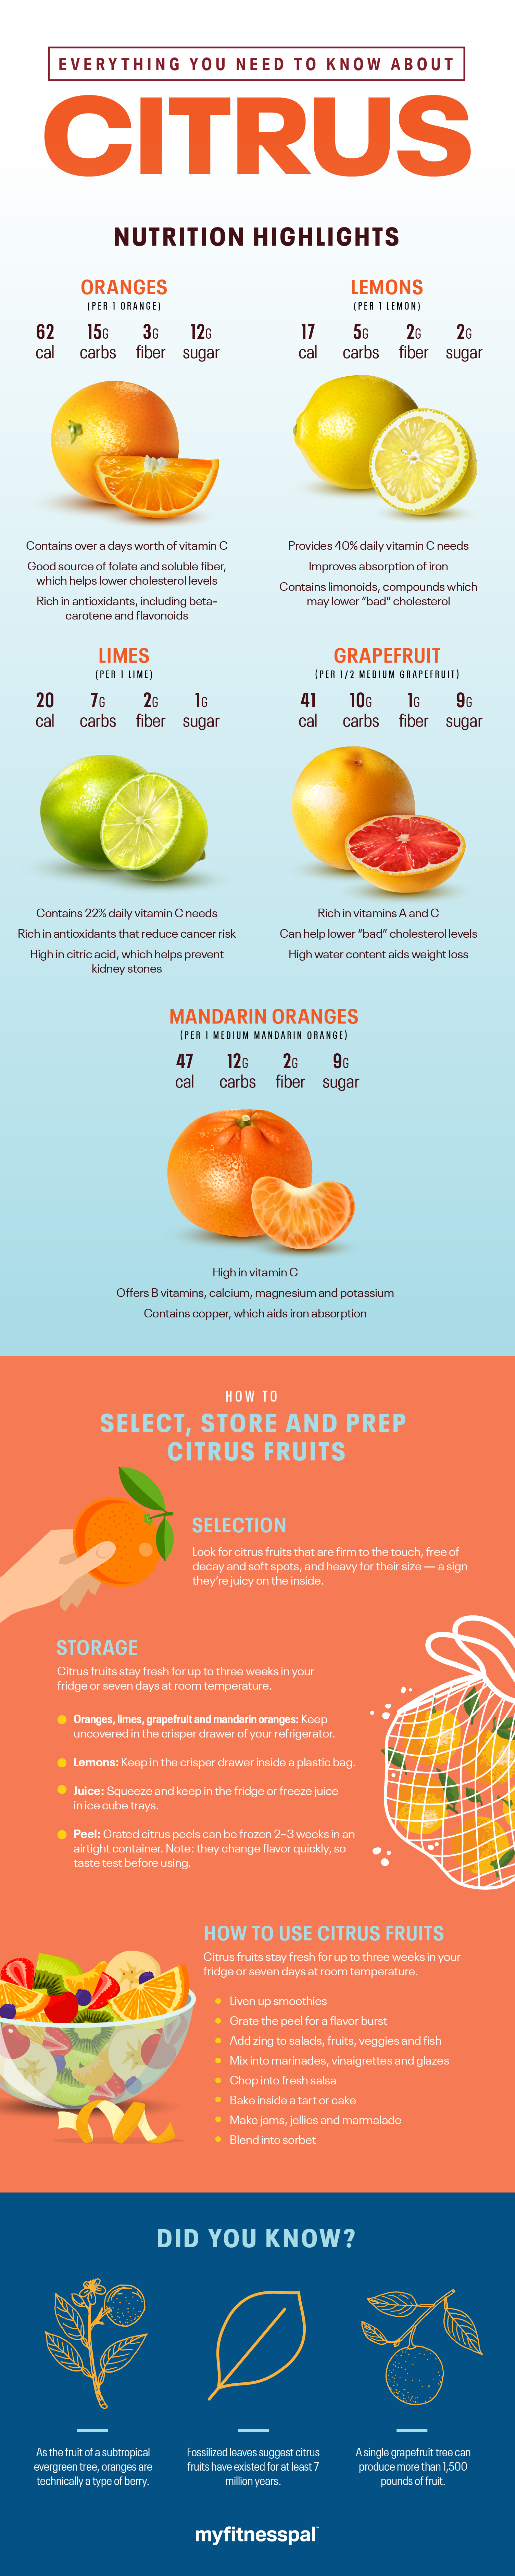 Citrus fruit nutrition